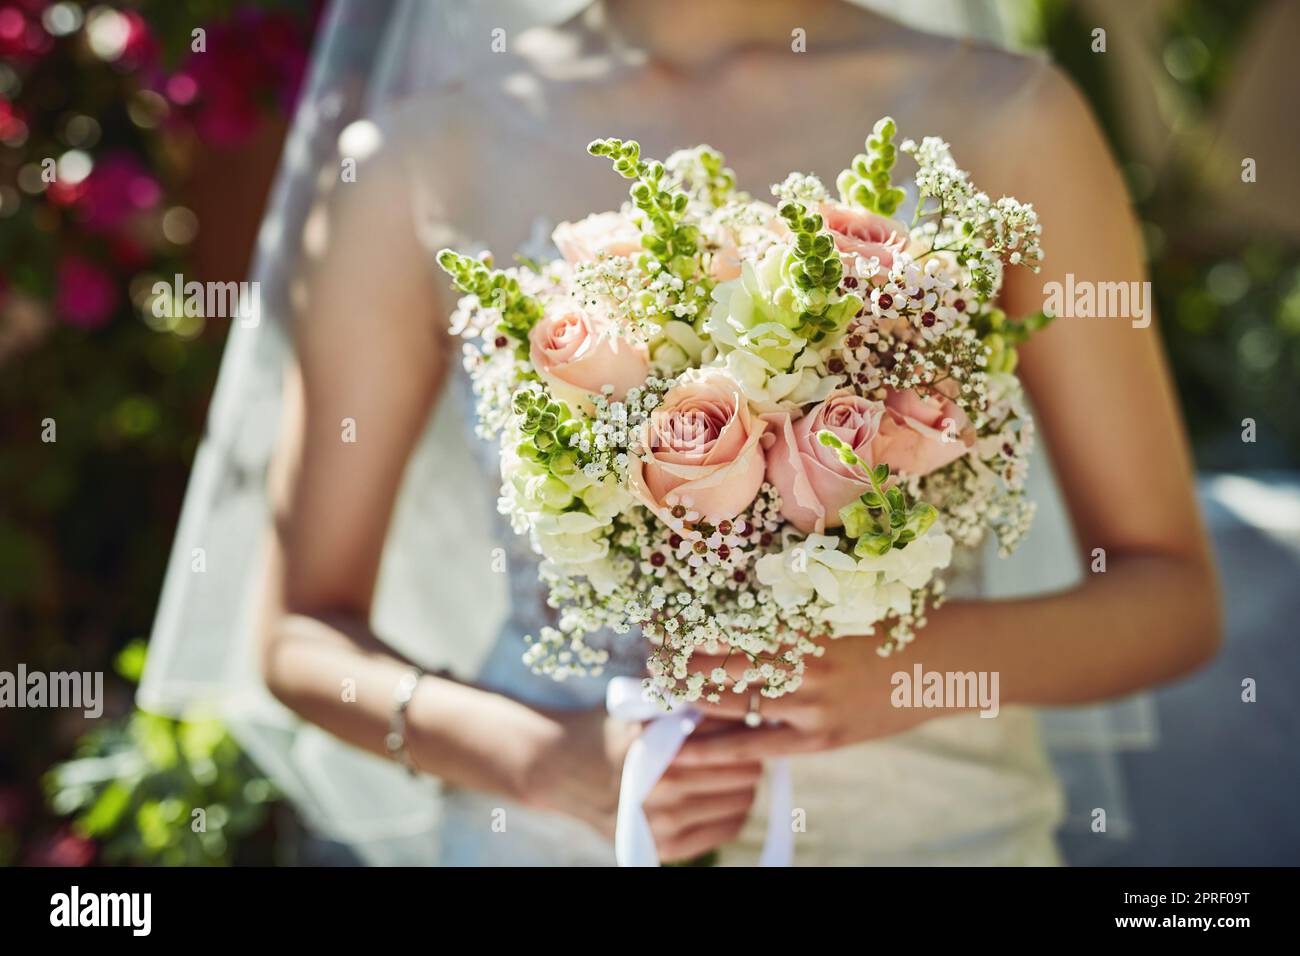 Wer das fangen wird, Frage ich mich. Eine unkenntliche Frau, die einen Blumenstrauß bei einer Hochzeit hält. Stockfoto